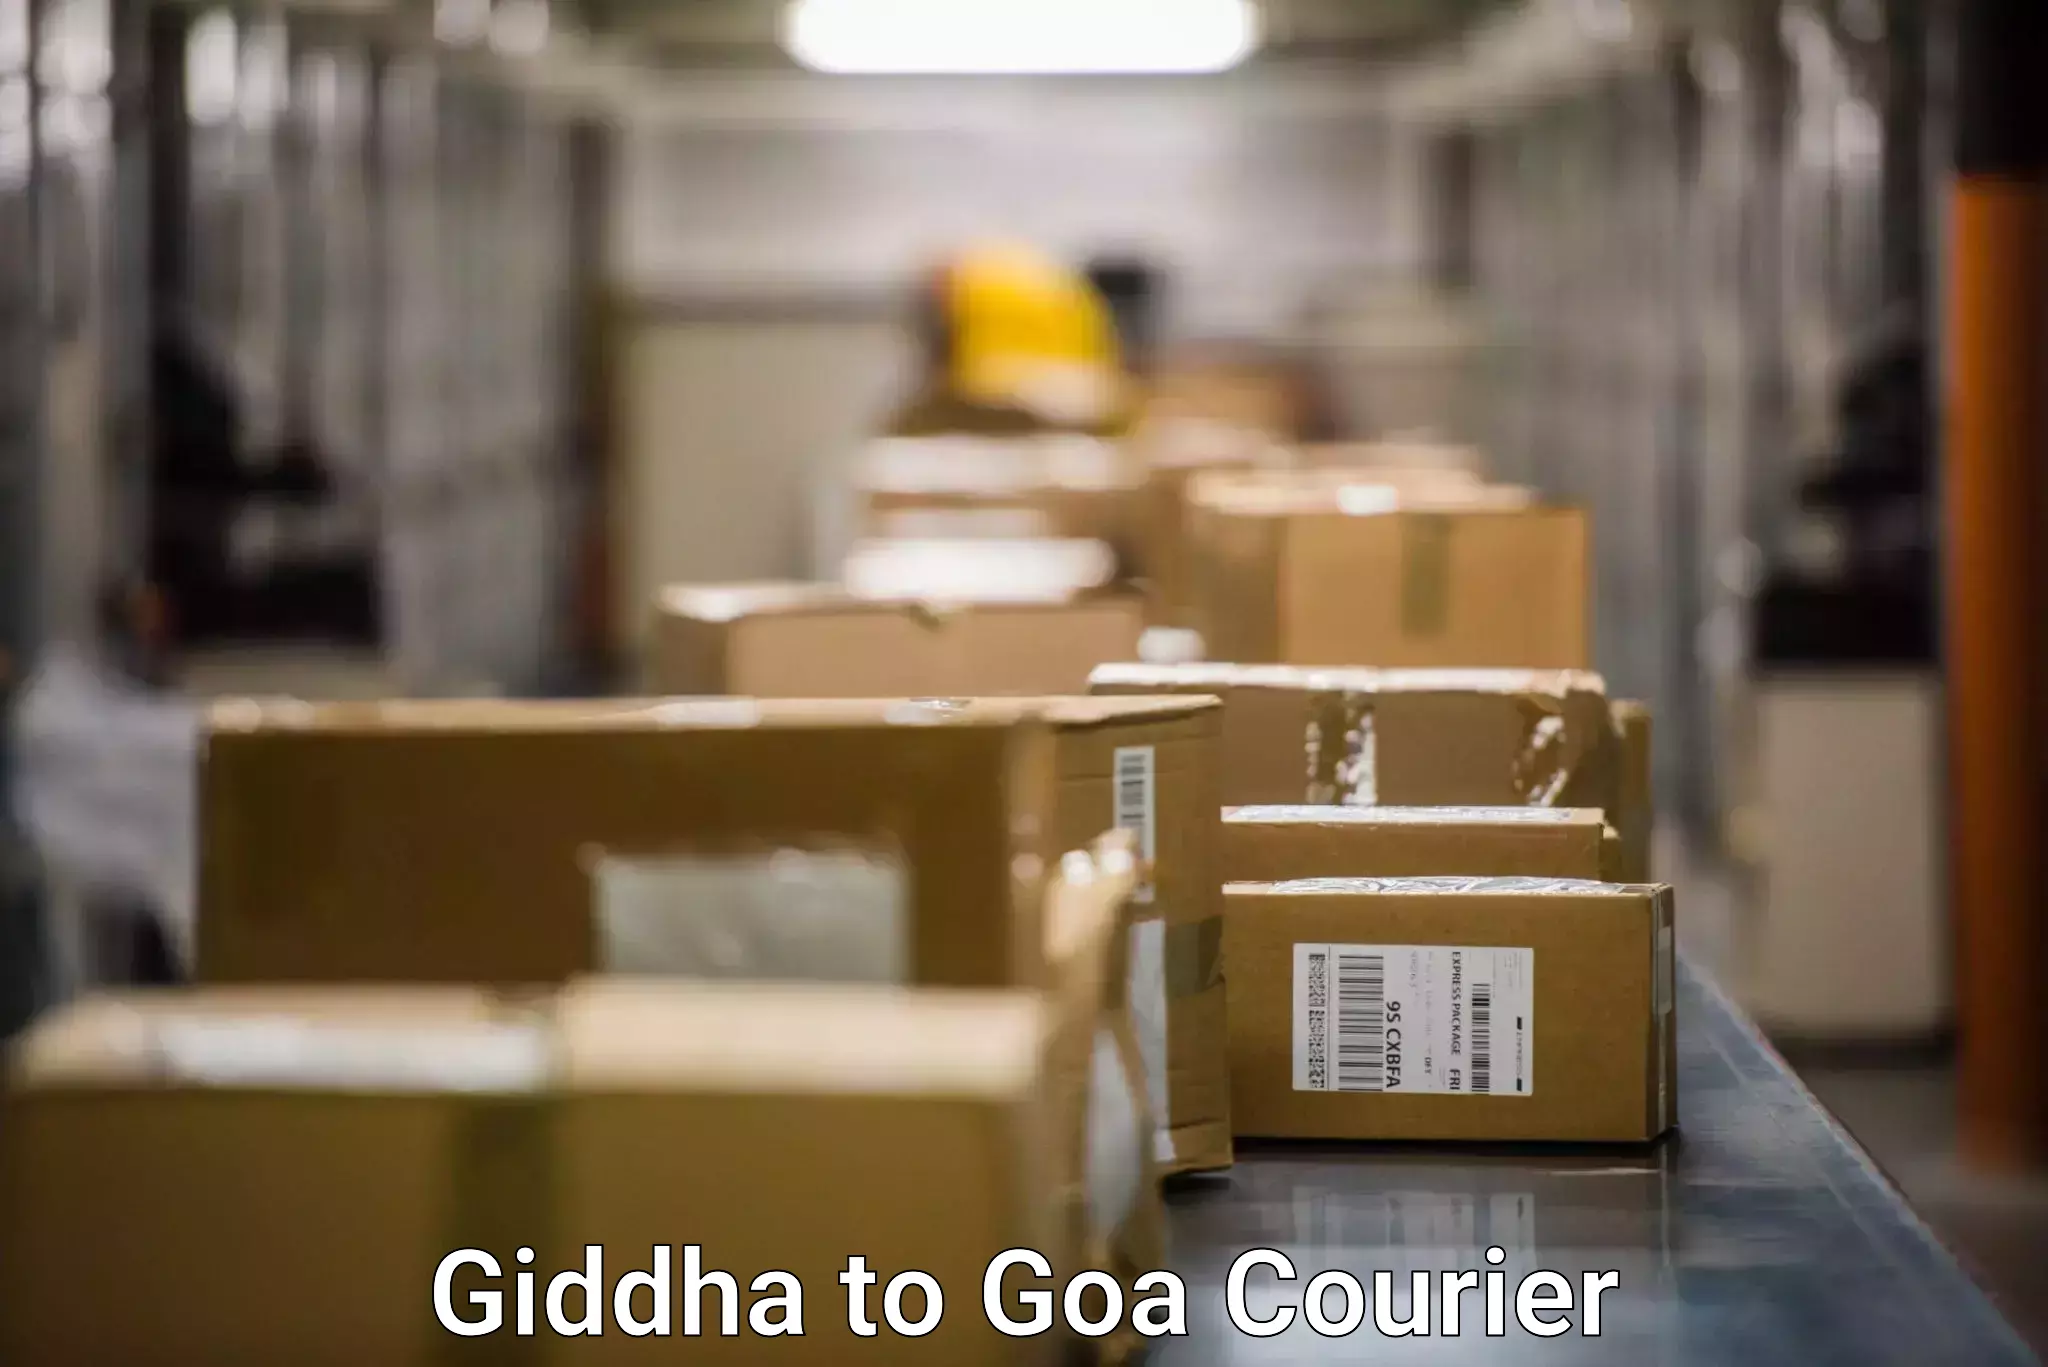 Customer-centric shipping Giddha to Margao